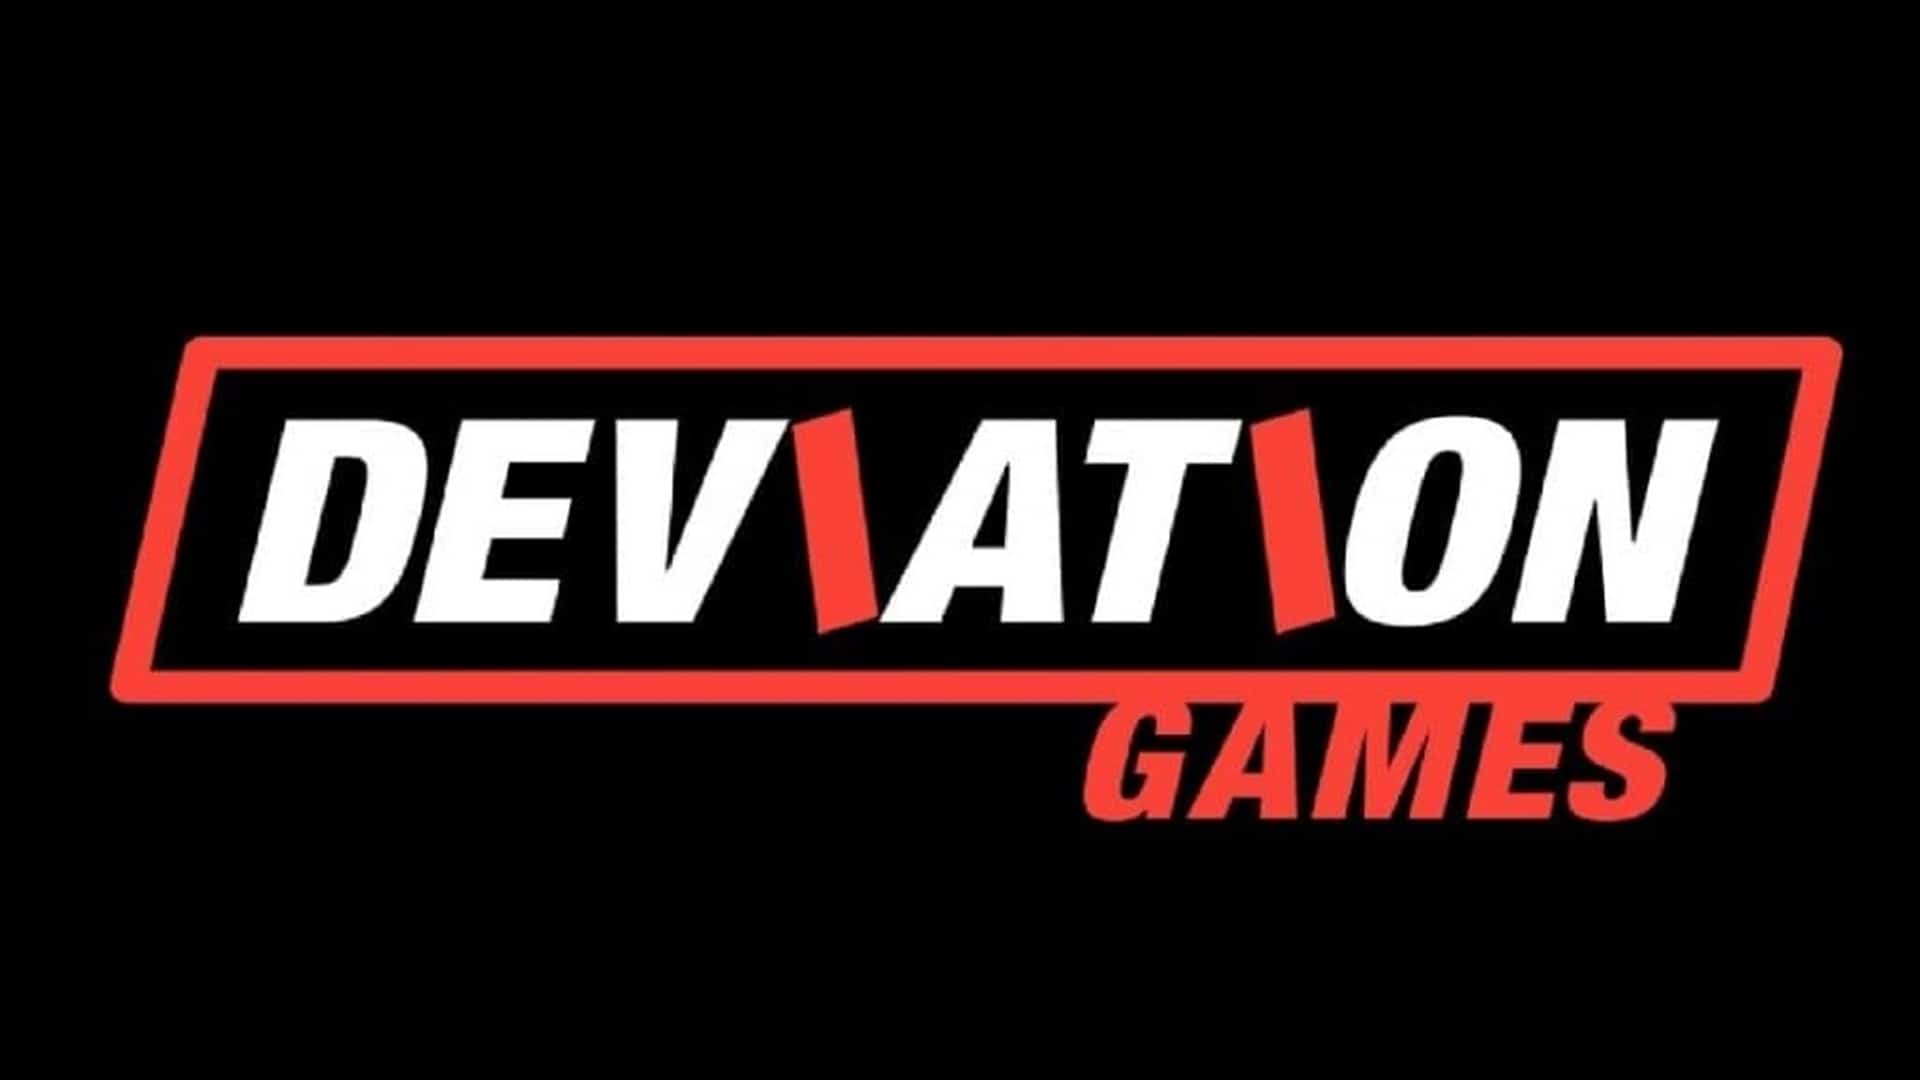 Deviation Games ha abierto un nuevo estudio en Canadá, GamersRD